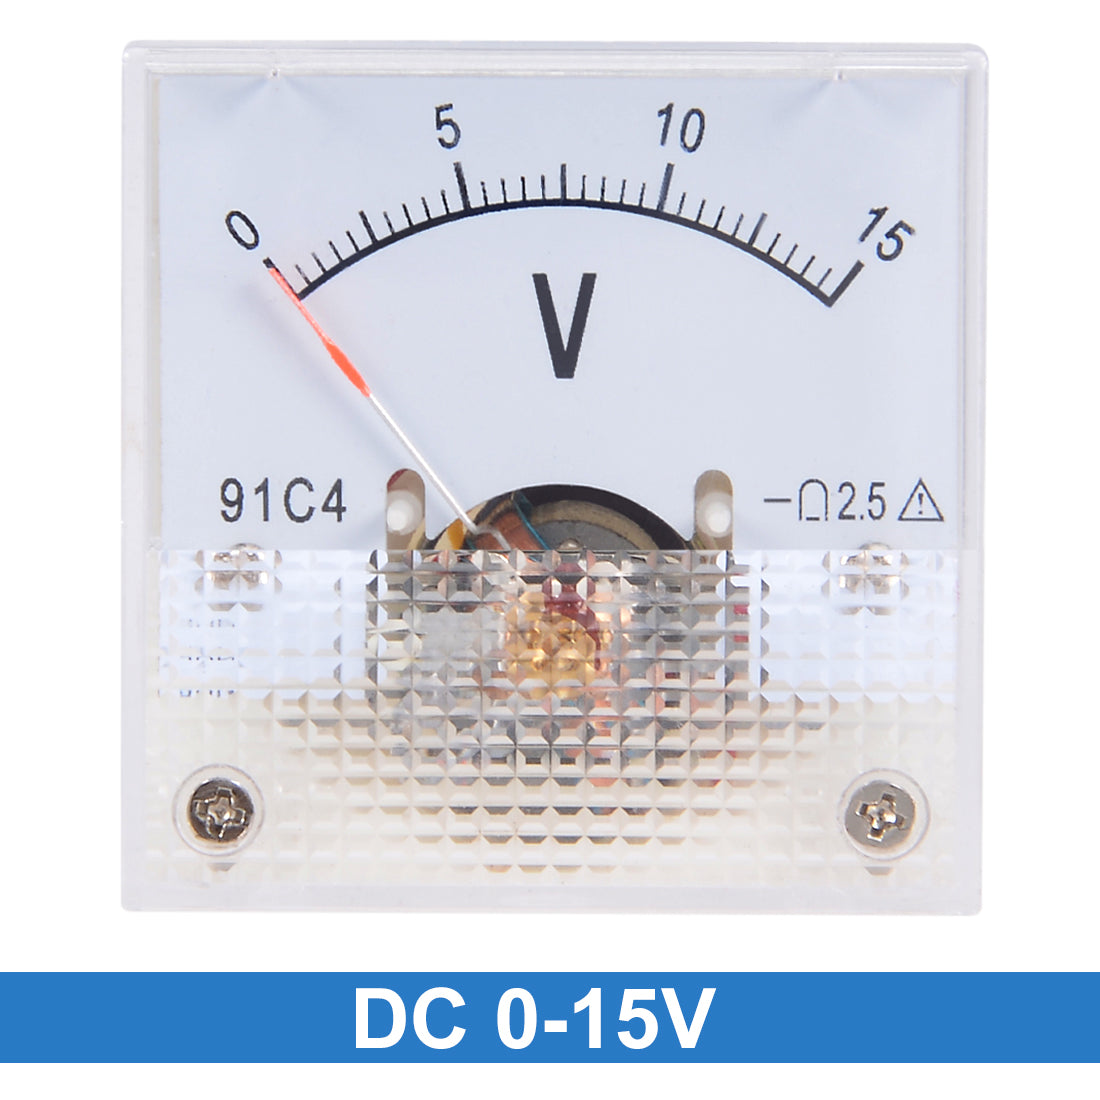 uxcell Uxcell DC 0-15V Analog Panel Voltage Gauge Volt Meter 91C4 2.5% Error